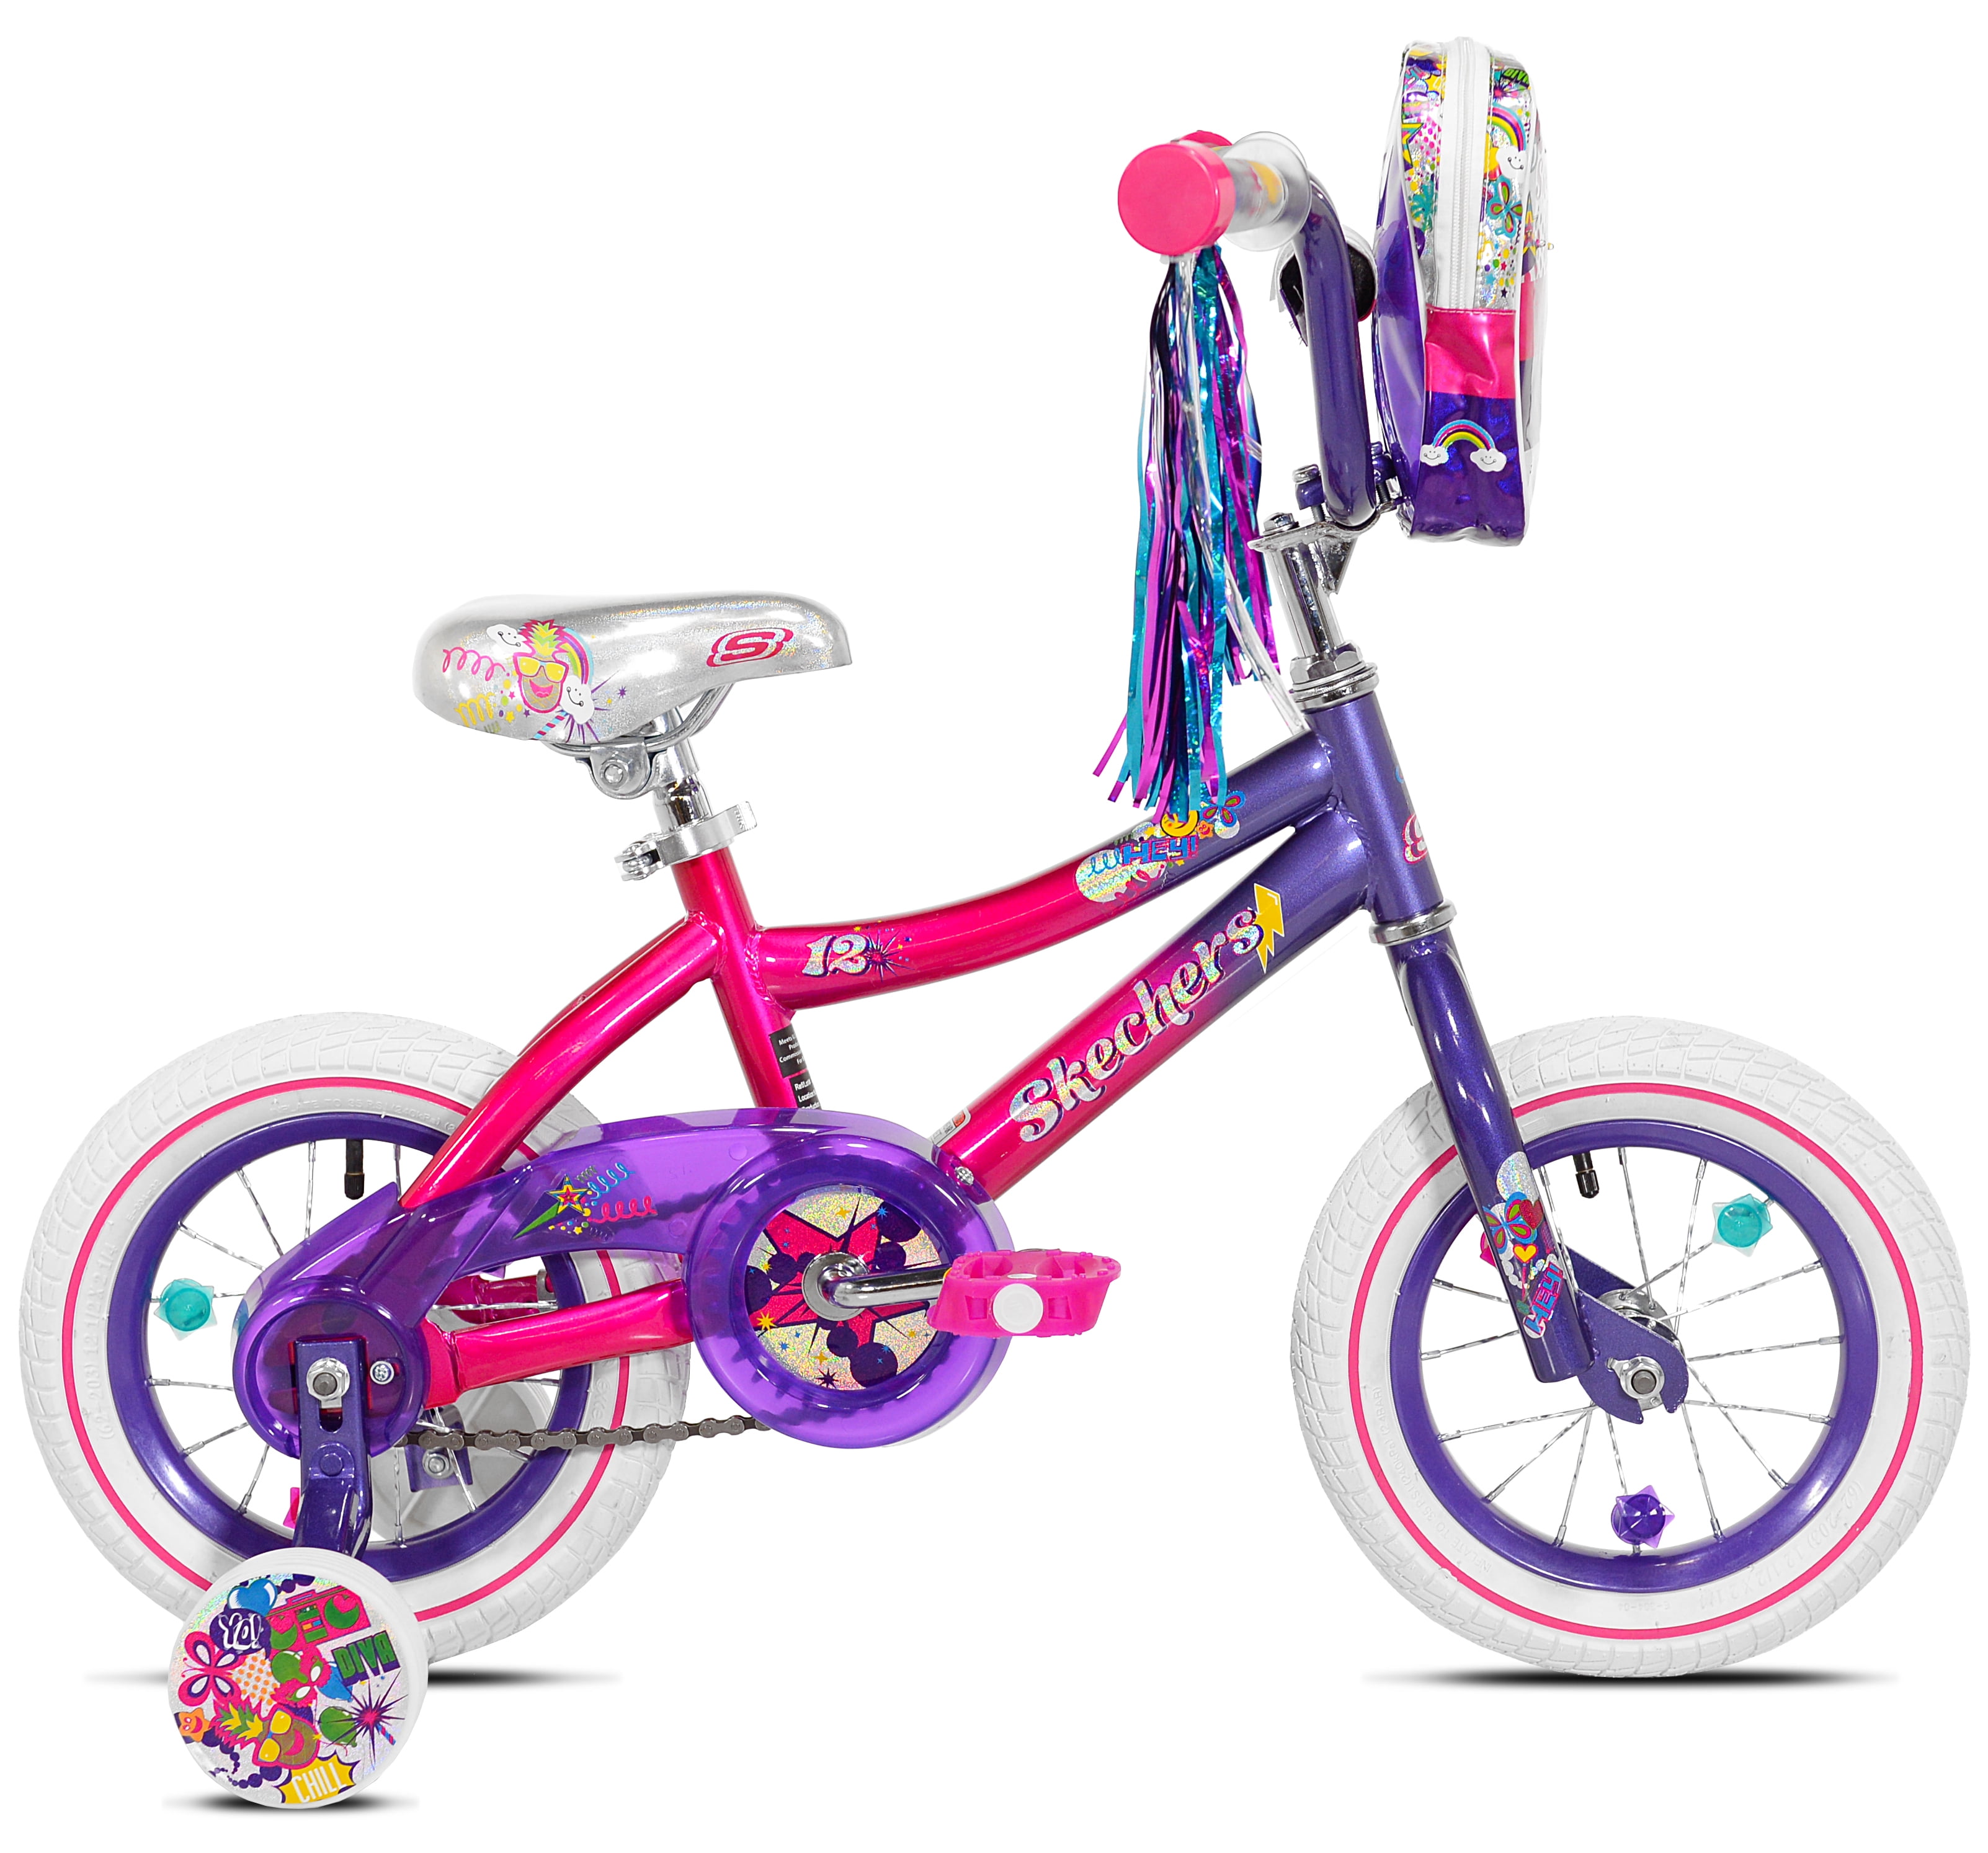 Skechers Girl's Bike, Pink/Purple 